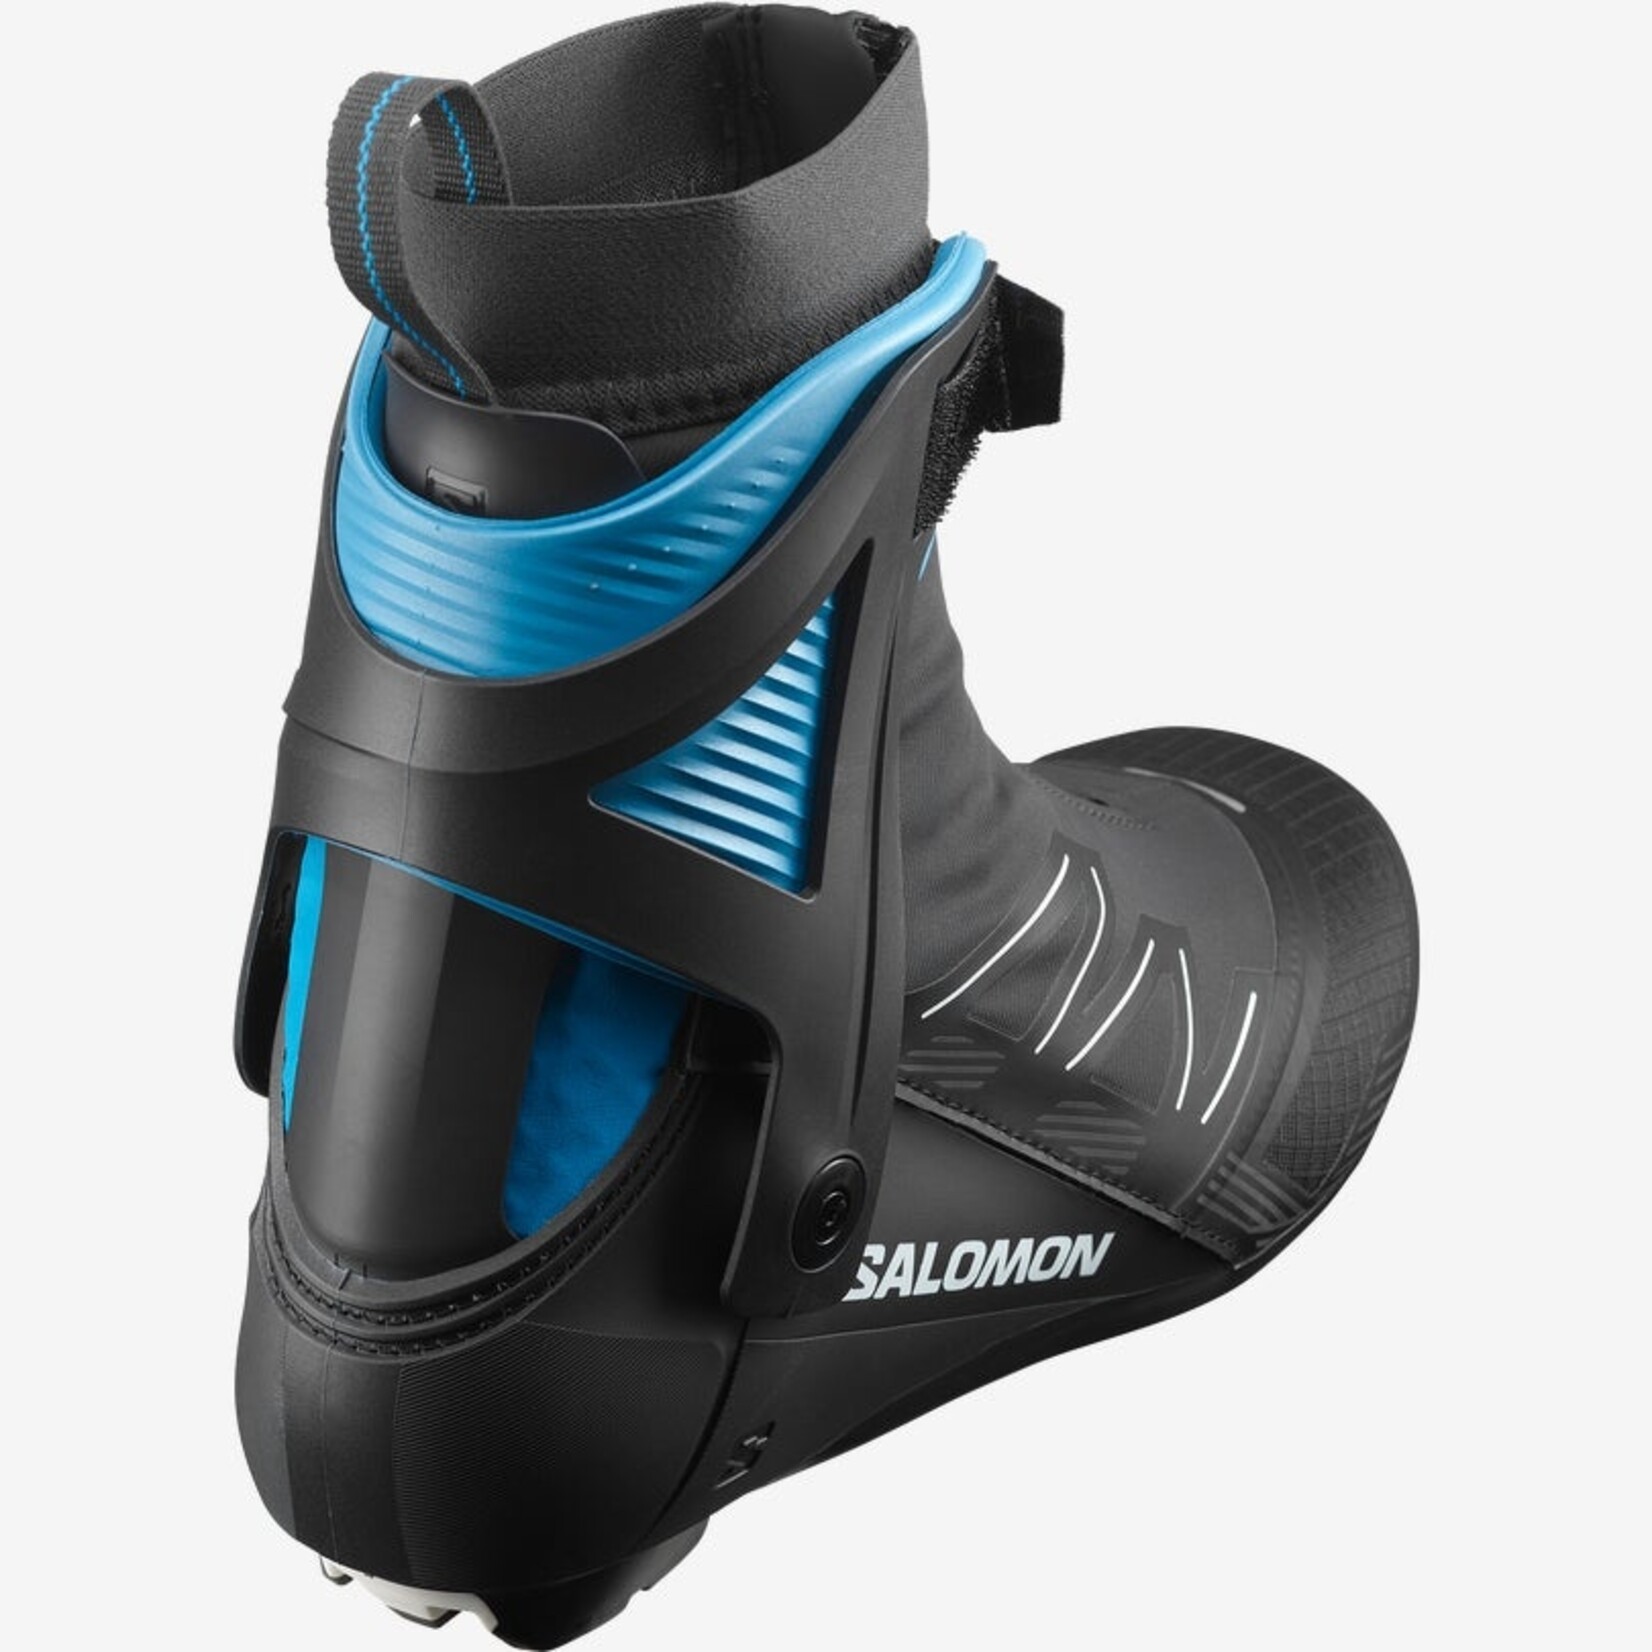 SALOMON RS 8 Skate Ski Boot Prolink